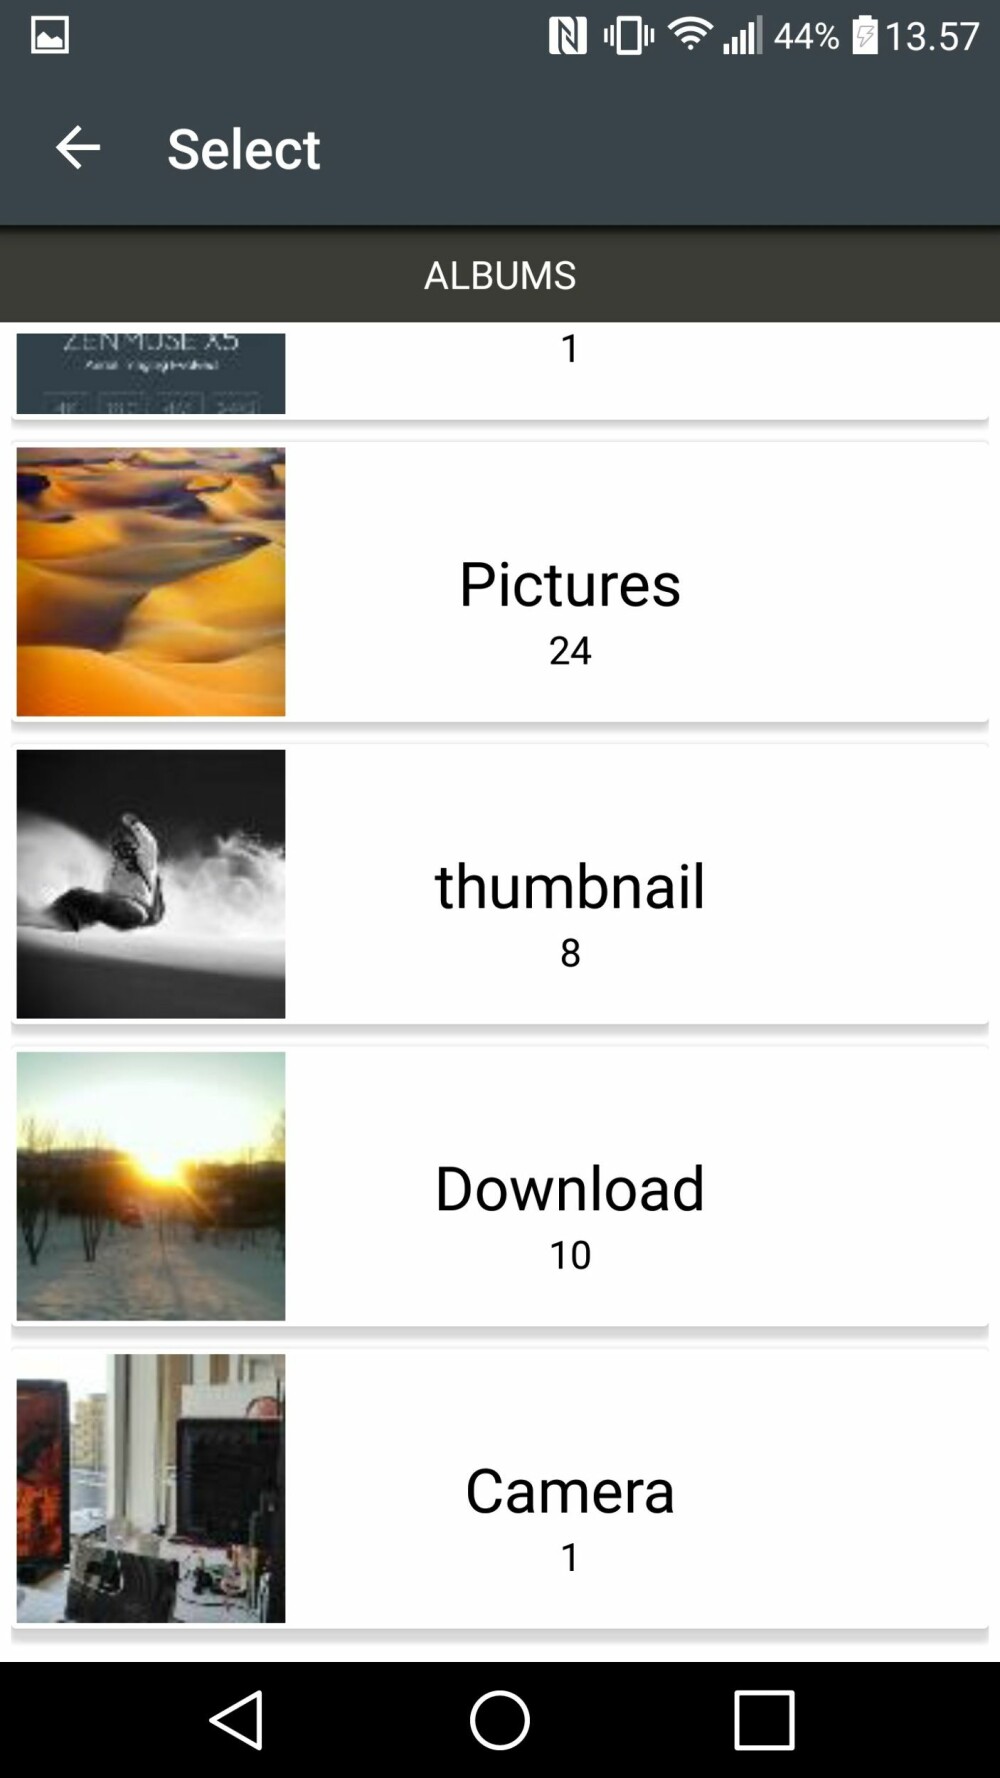 Trykk på galleri-ikonet øverst i appen.
Finn mappen med bildene du vil bruke (vanligvis «Camera»).